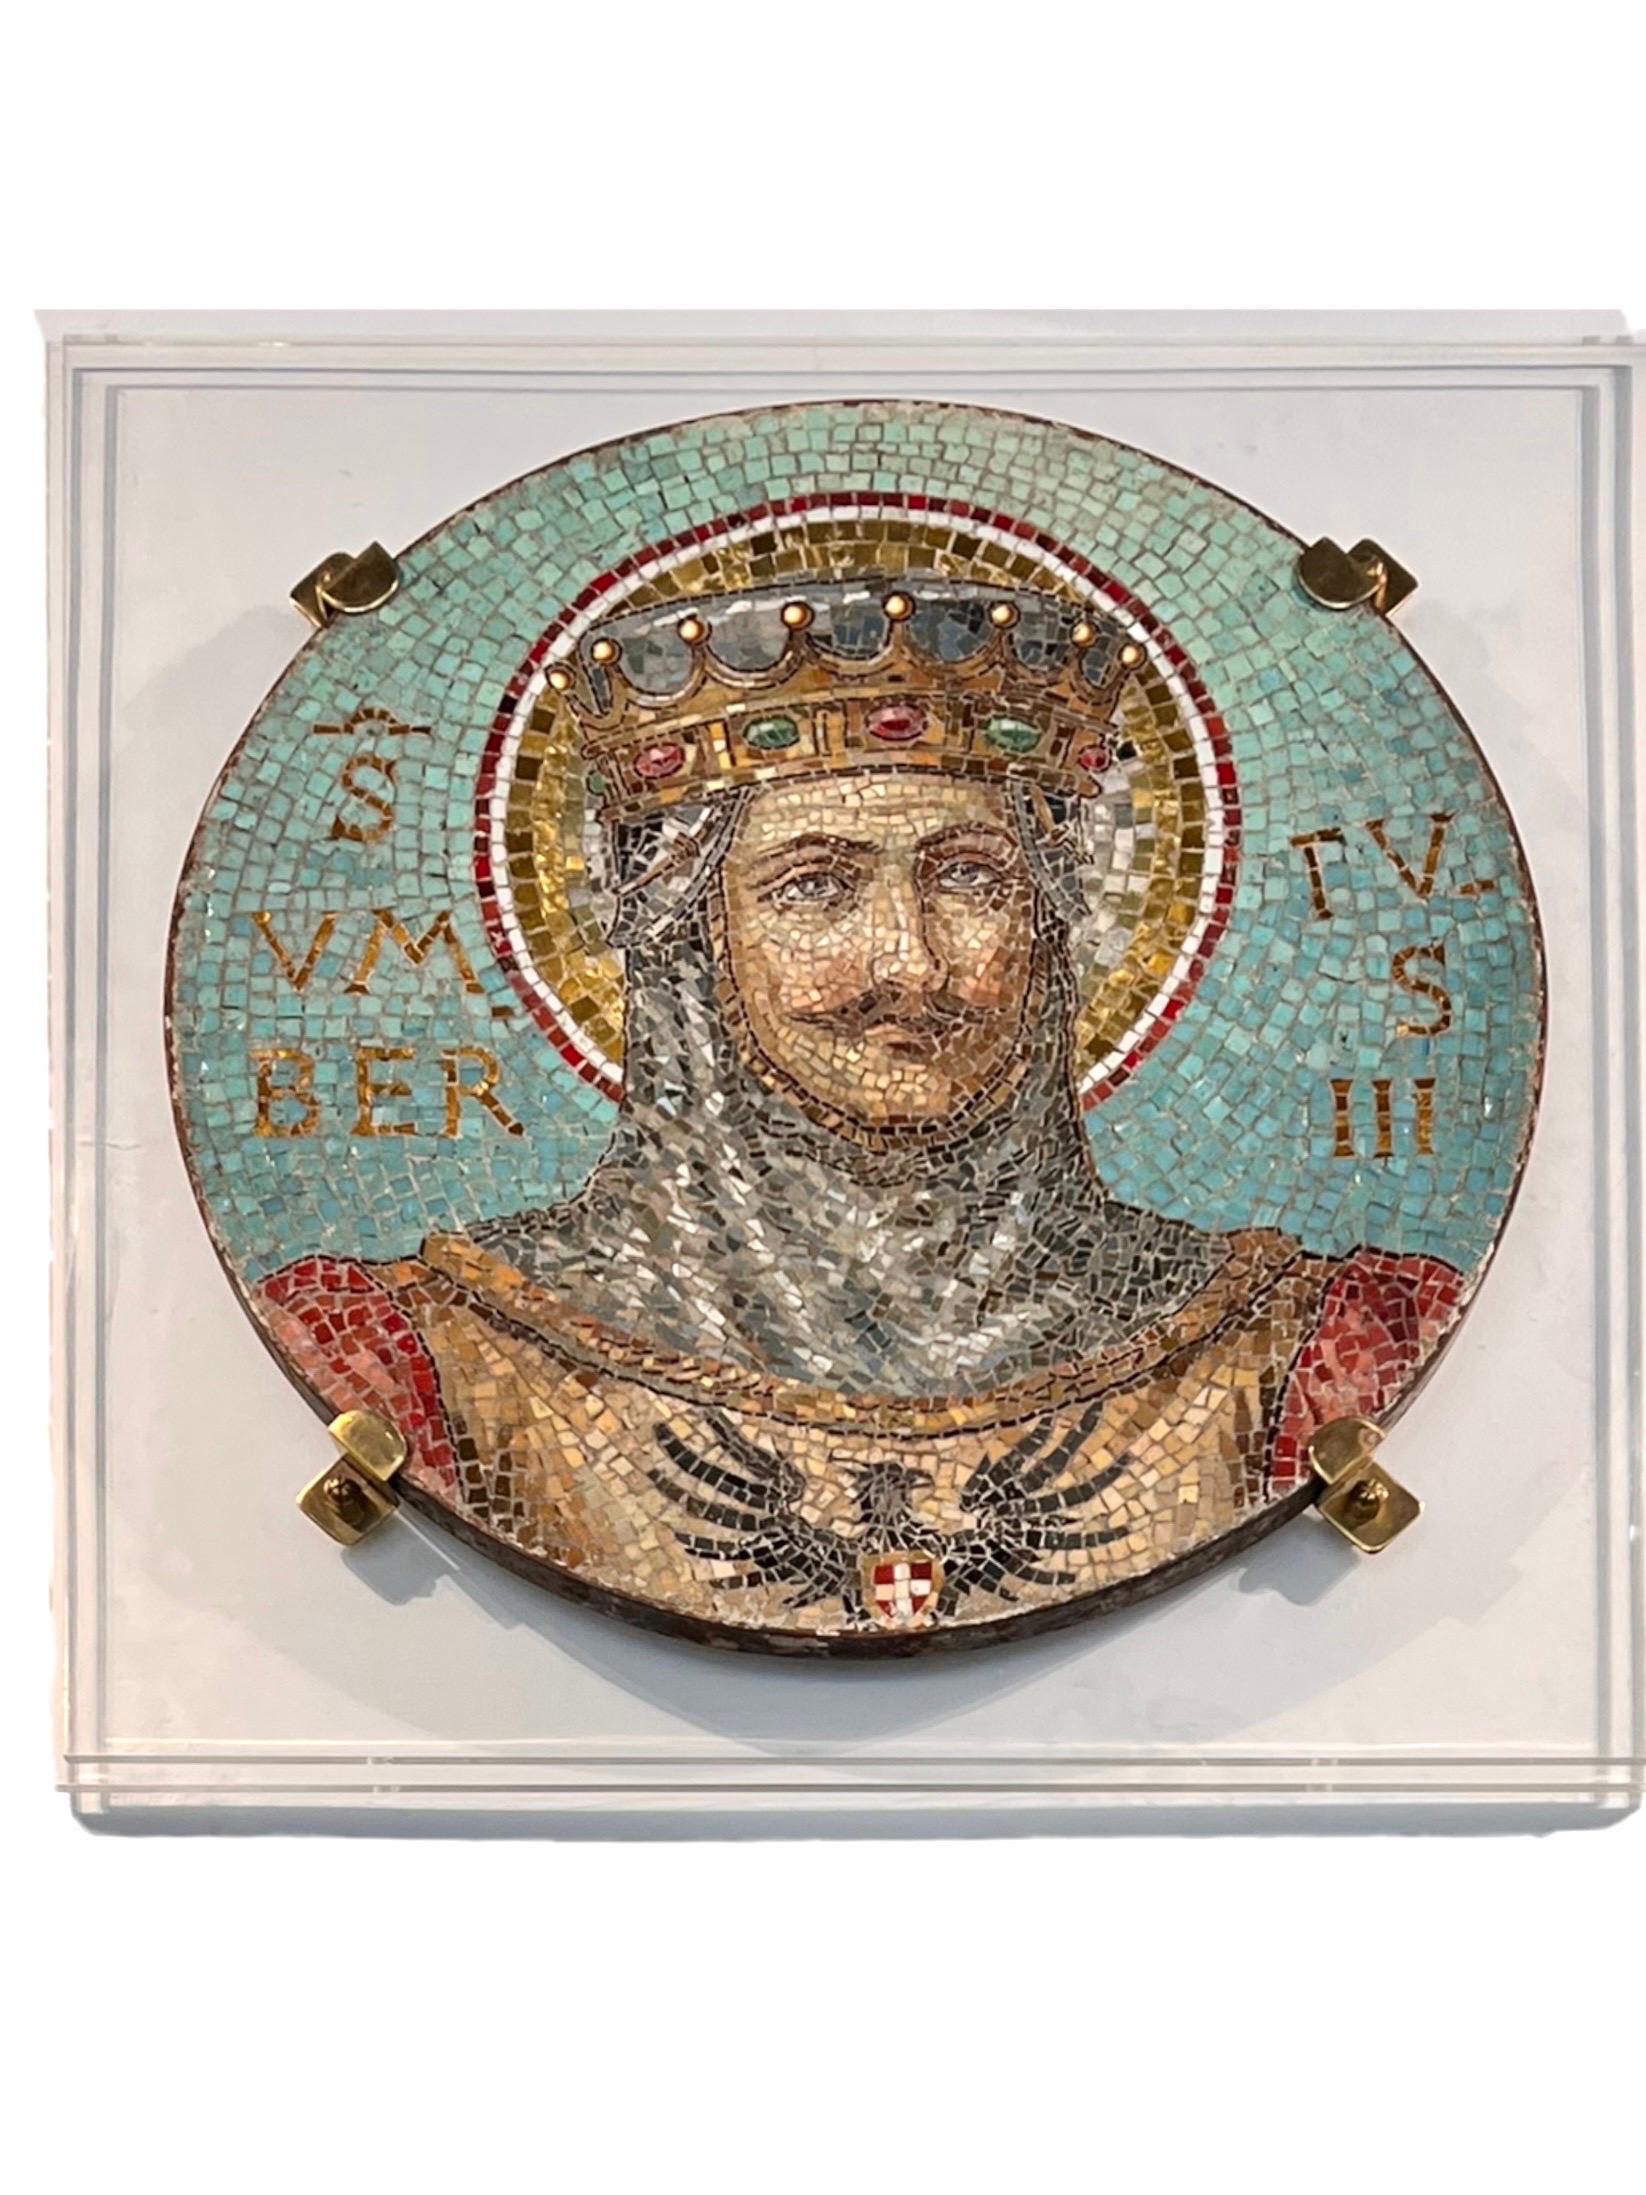 Venetianisches italienisches Rundmosaik des 19. Jahrhunderts von Umberto III. Das sehr farbenfrohe und detaillierte Werk ist auf eine Lucite-Platte montiert. Umberto III. (1136-1188), bekannt als 